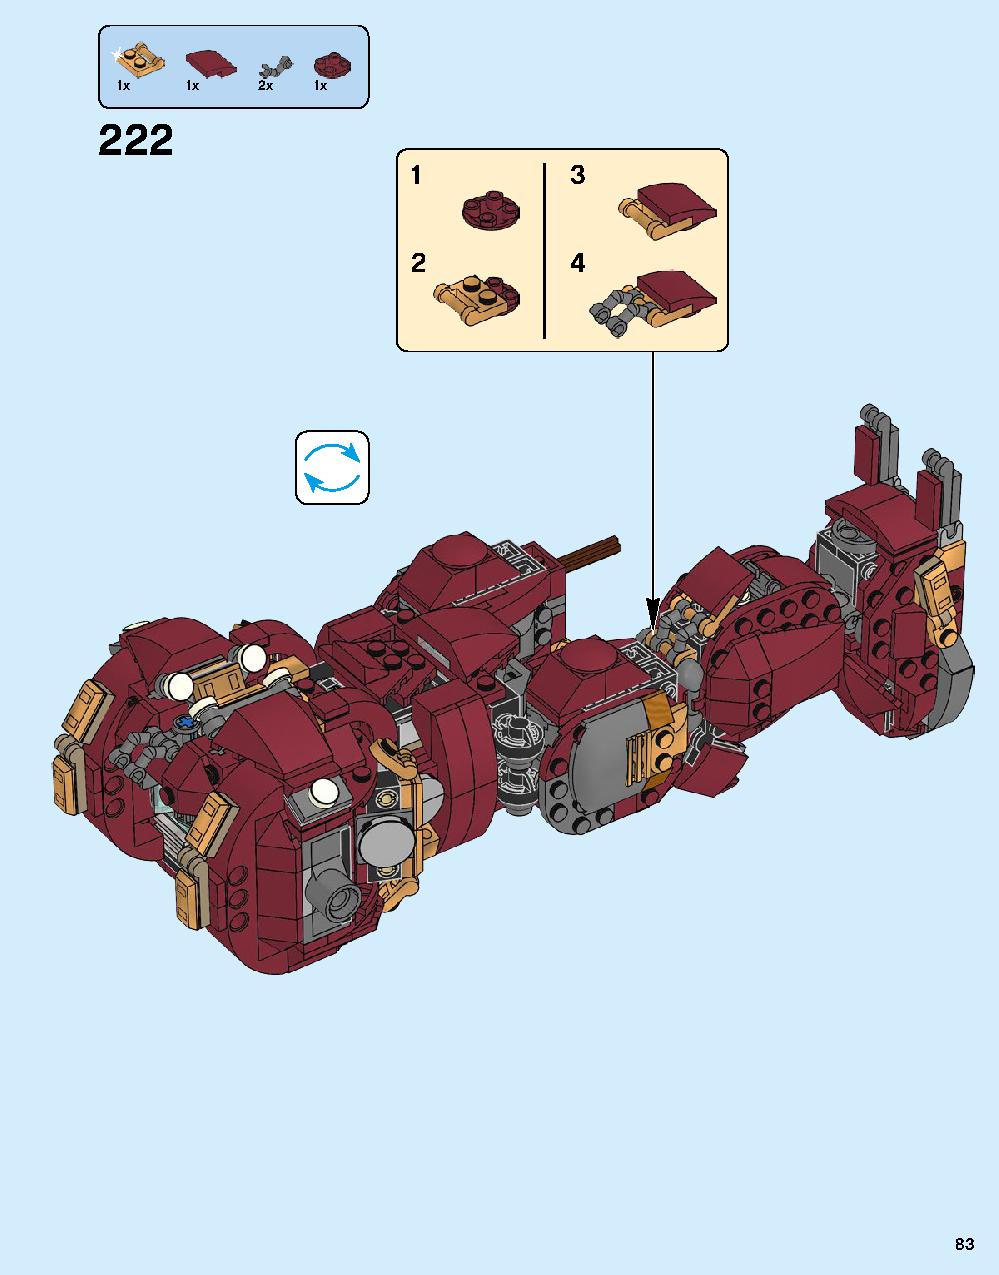 어벤져스 헐크버스터: 울트론 에디션 76105 레고 세트 제품정보 레고 조립설명서 83 page